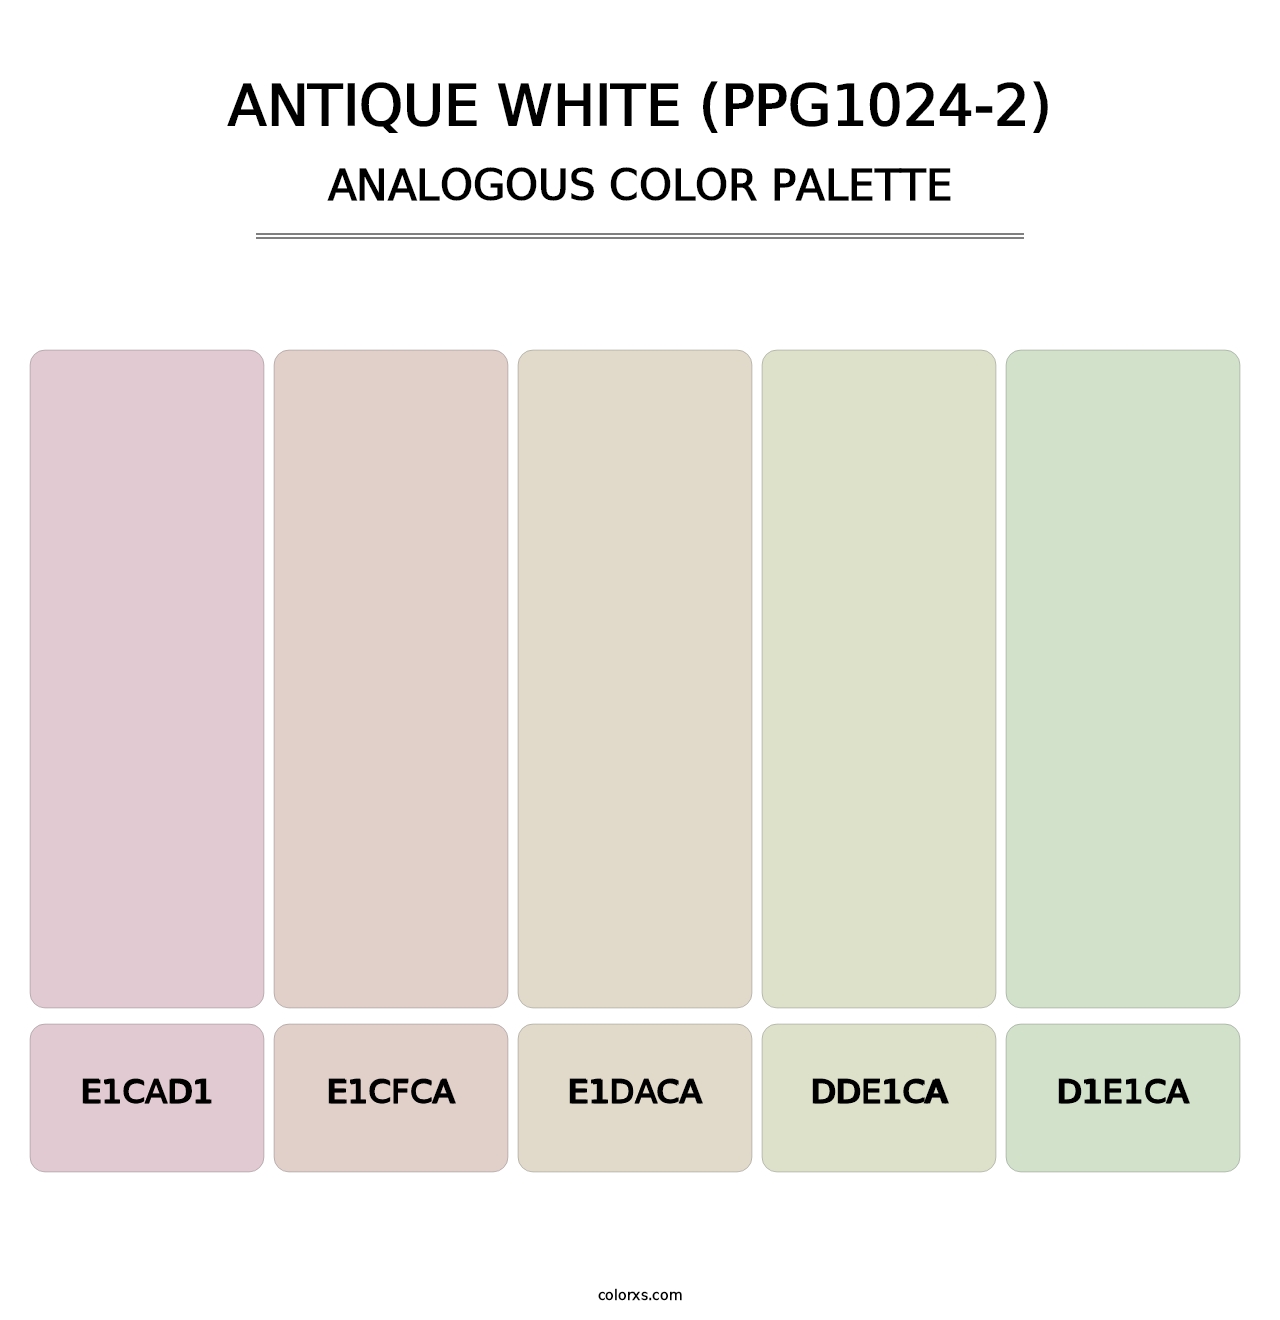 Antique White (PPG1024-2) - Analogous Color Palette